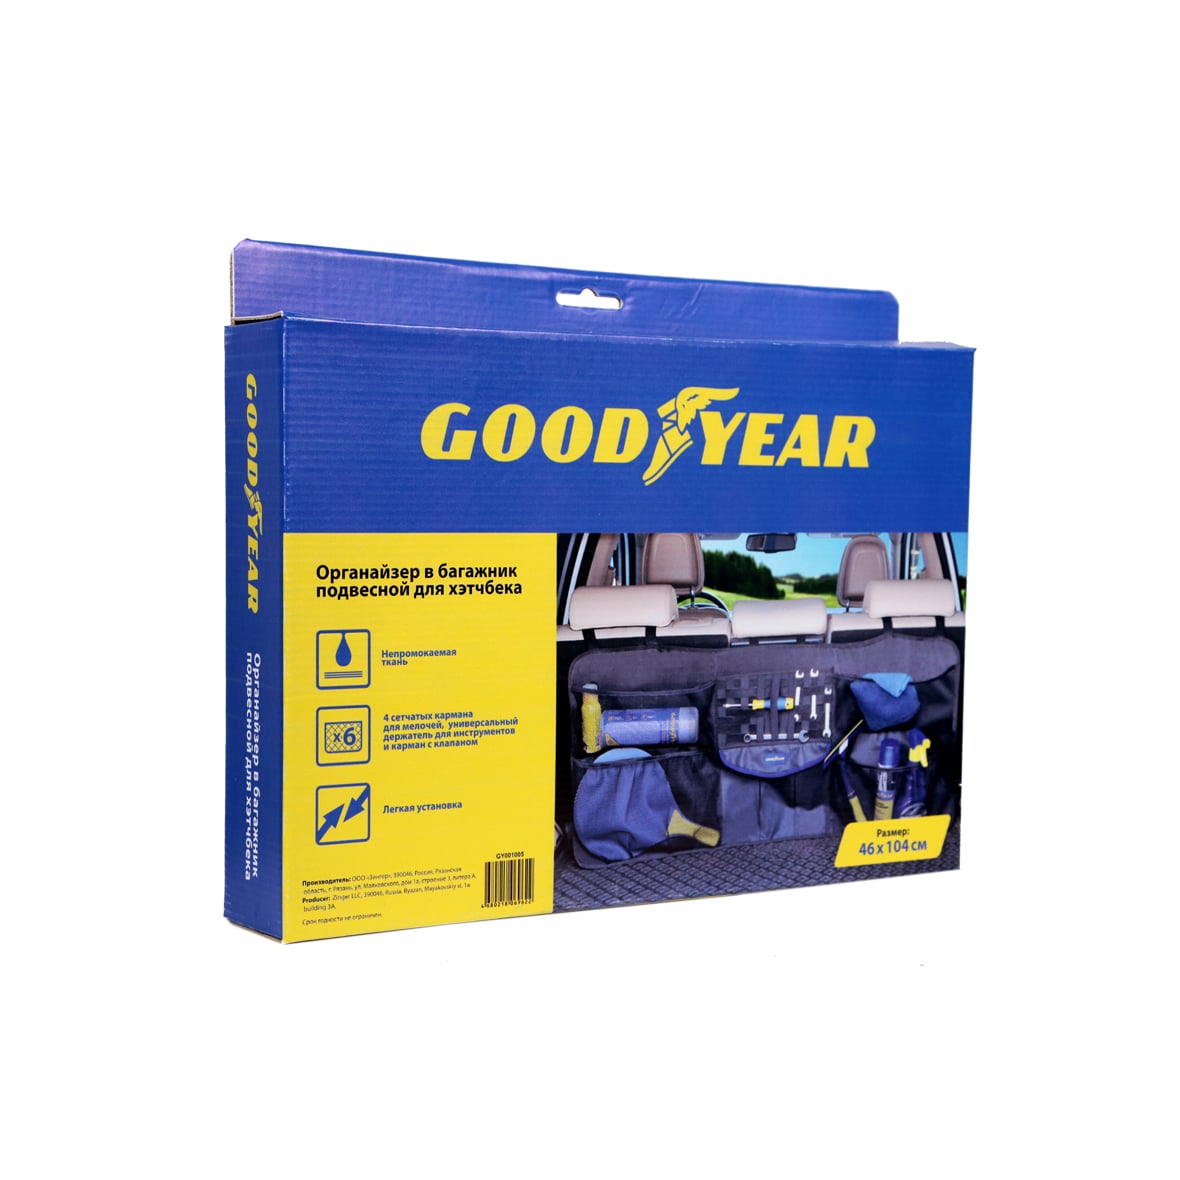 Органайзер в багажник Goodyear подвесной для хэтчбека (GY001005)